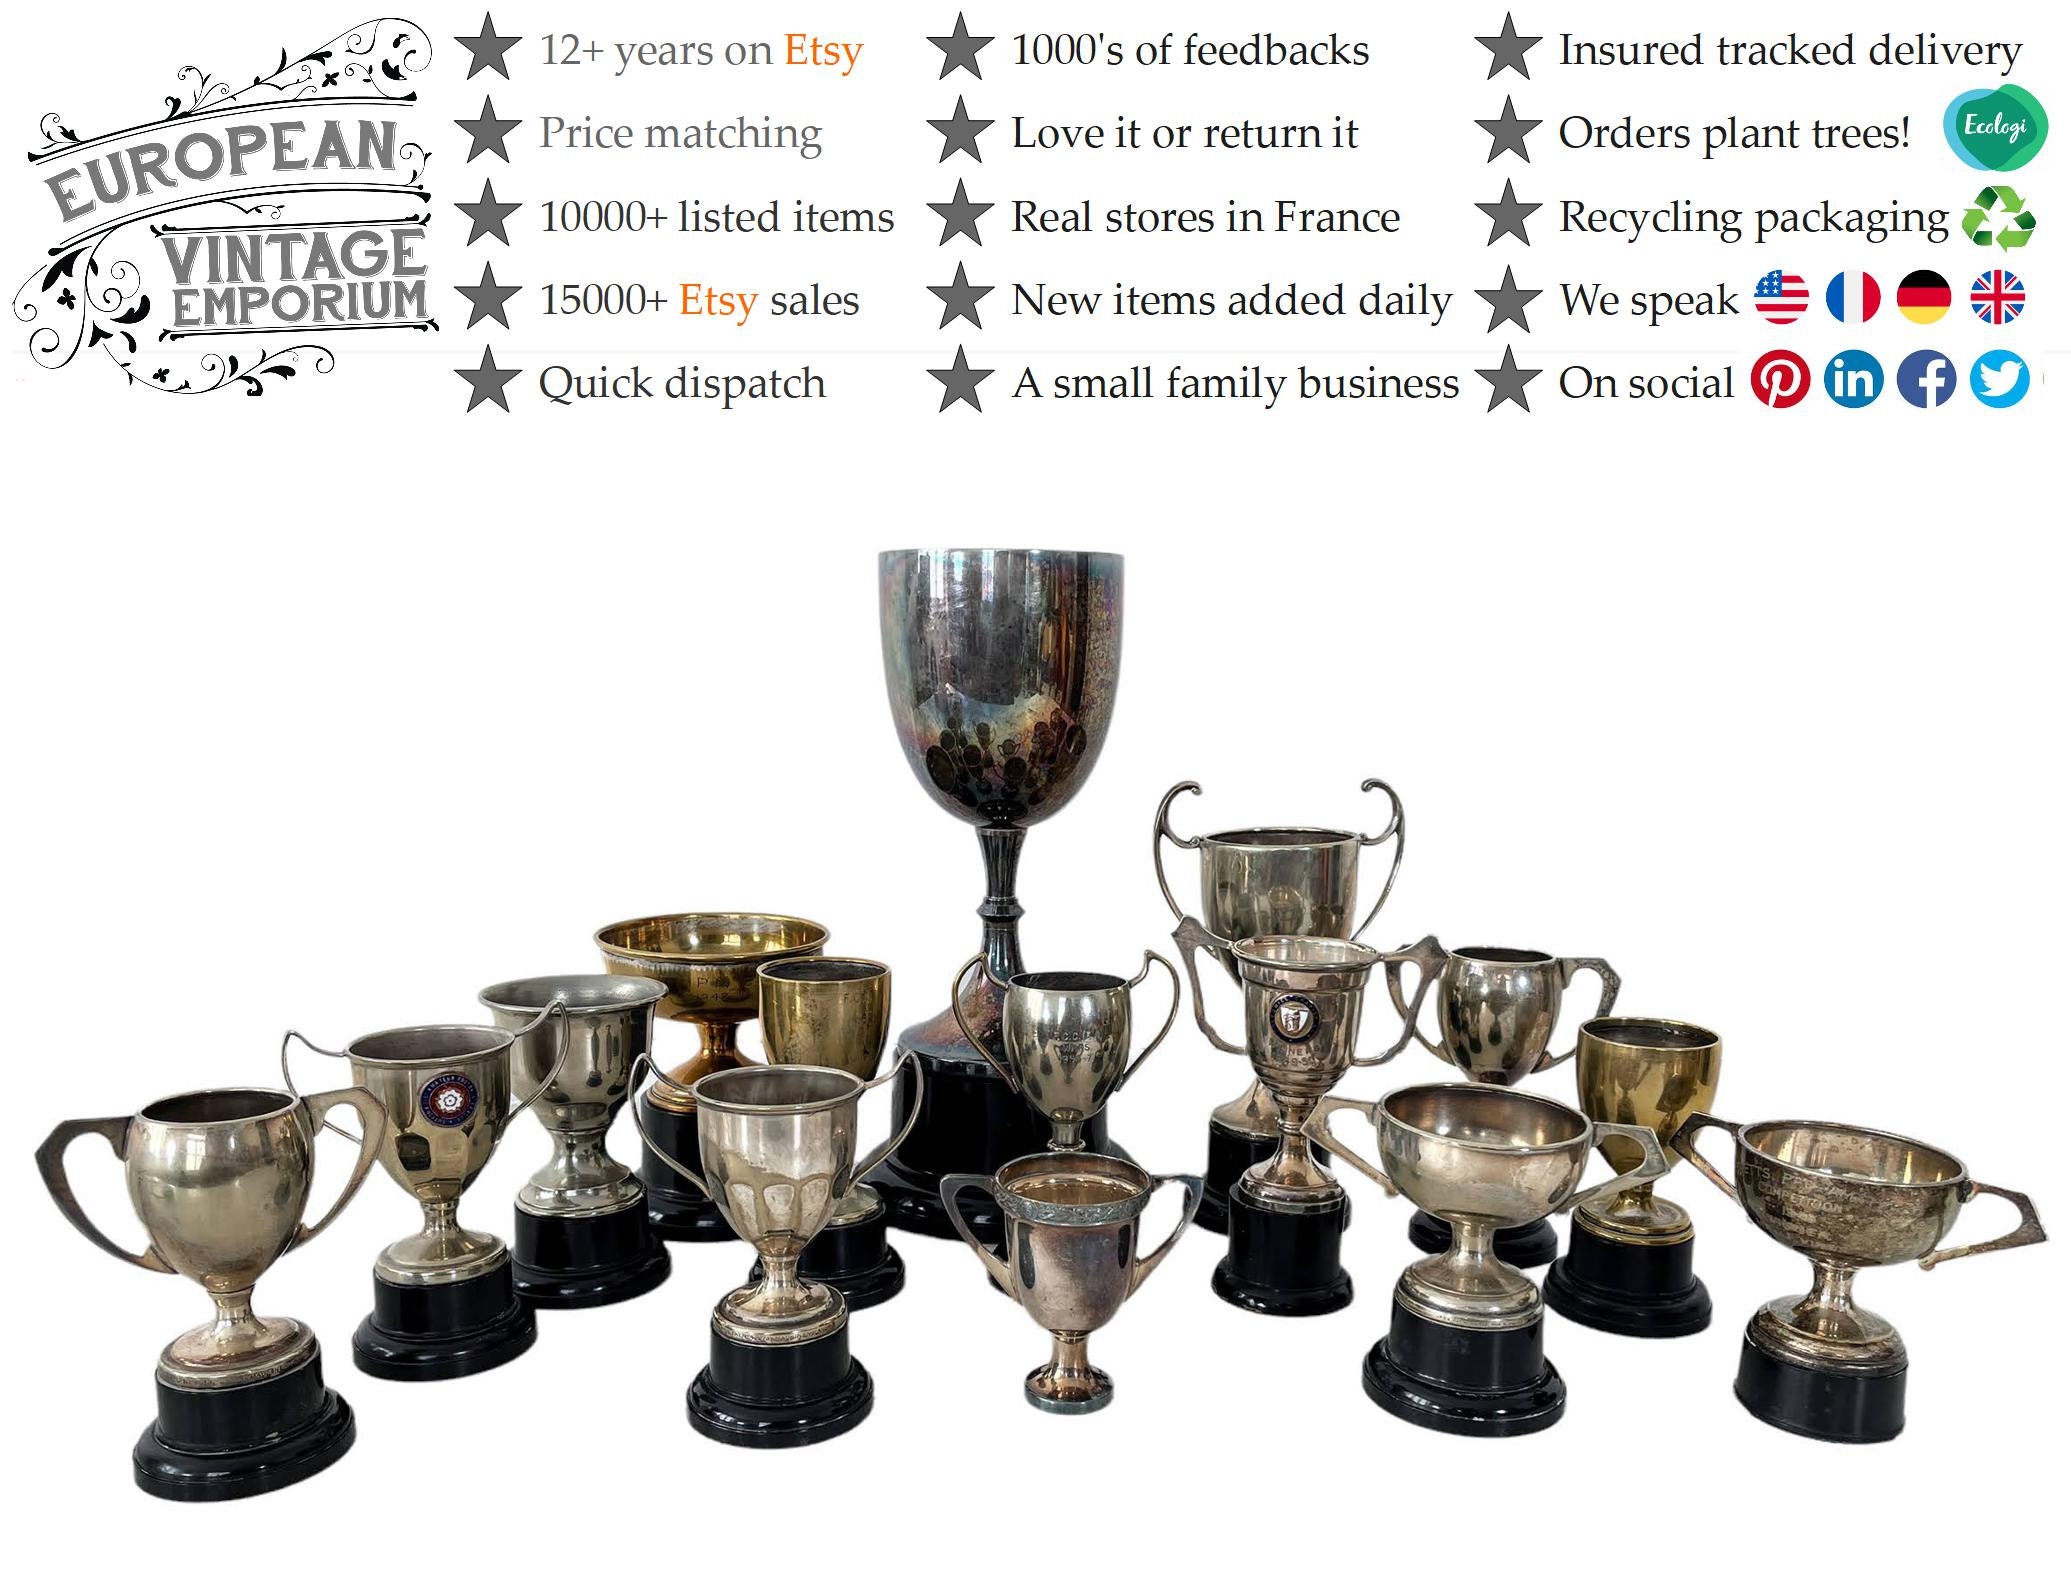 Lote 12 copas deportivas grabadas trofeos personalizados baratos